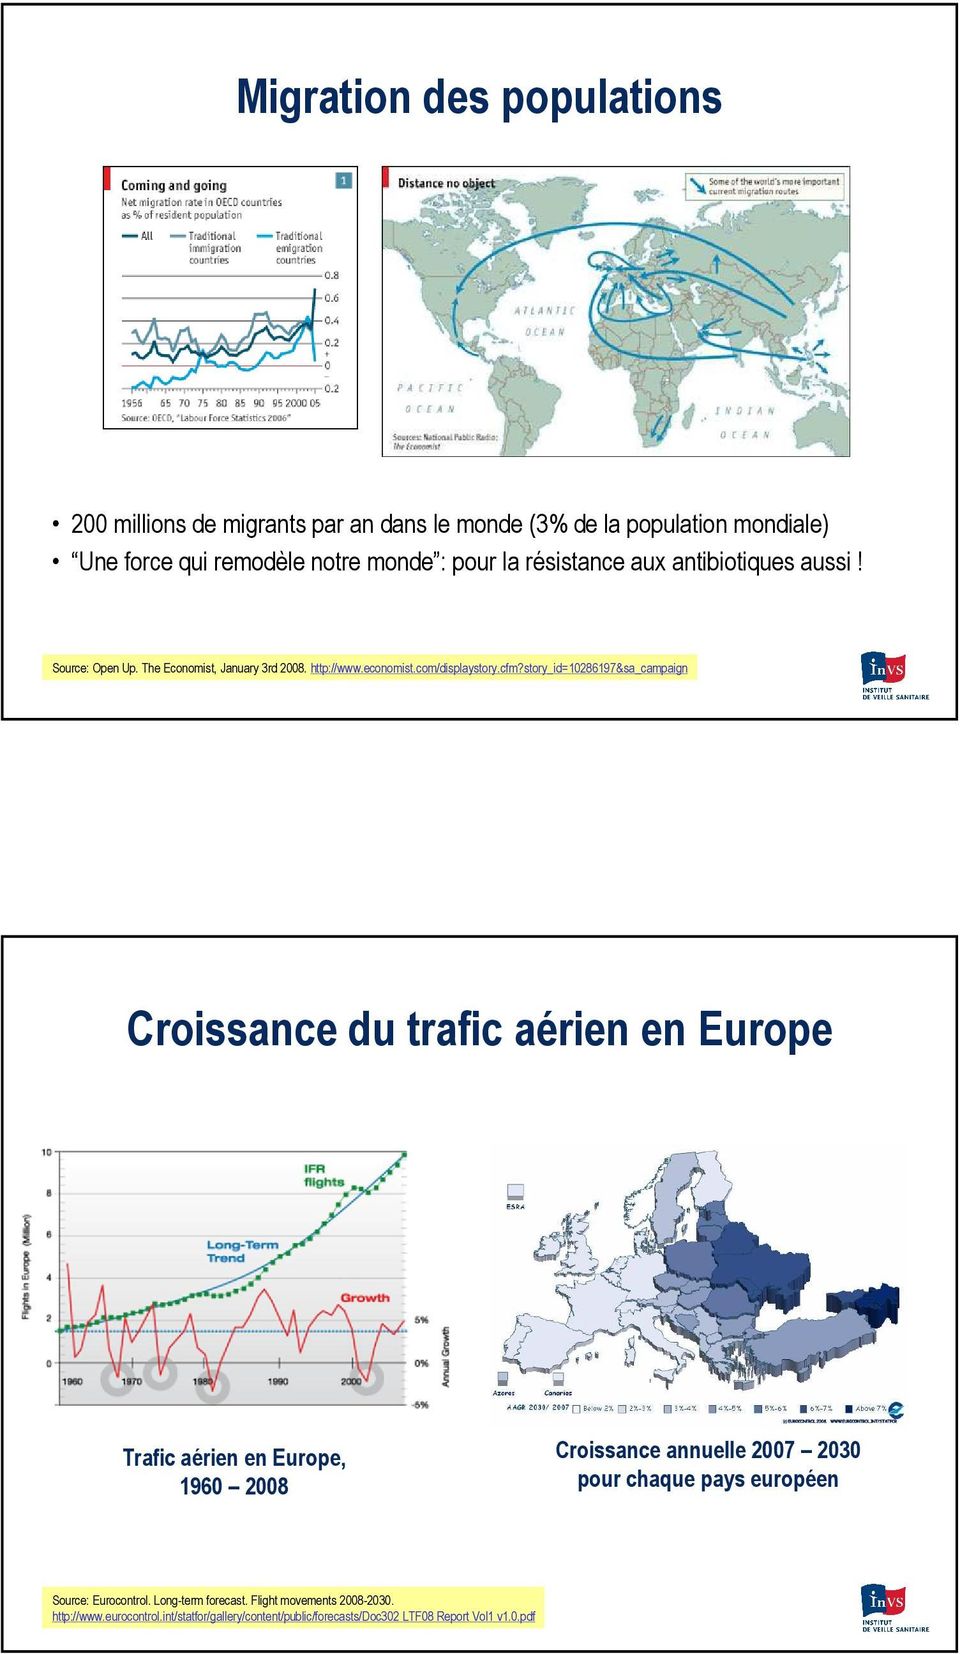 story_id=028697&sa_campaign Croissance du trafic aérien en Europe Trafic aérien en Europe, 960 2008 Croissance annuelle 2007 2030 pour chaque pays